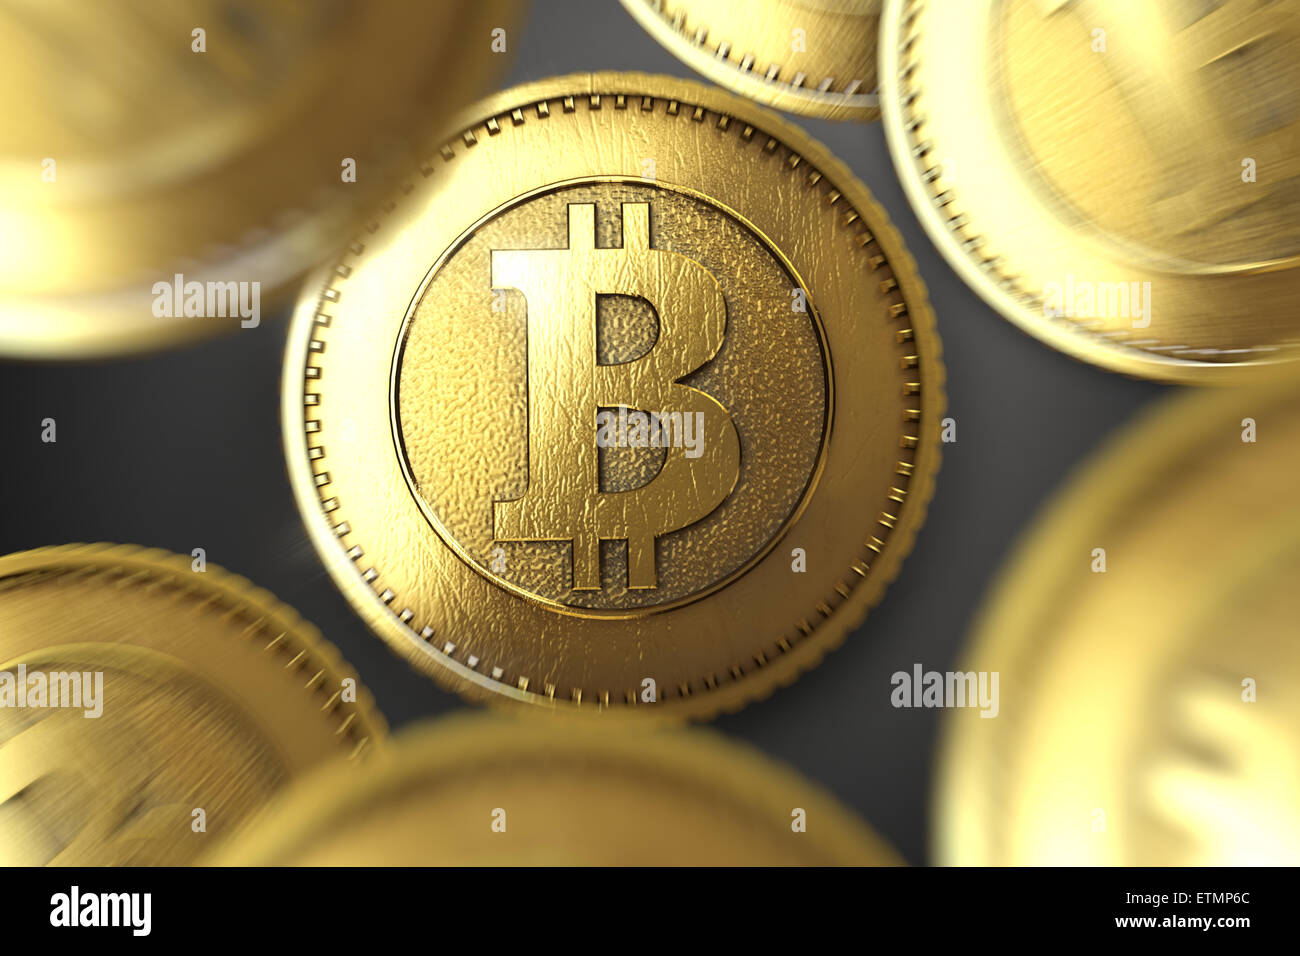 Rappresentazione stilizzata di Bitcoin, una valuta digitale. Foto Stock